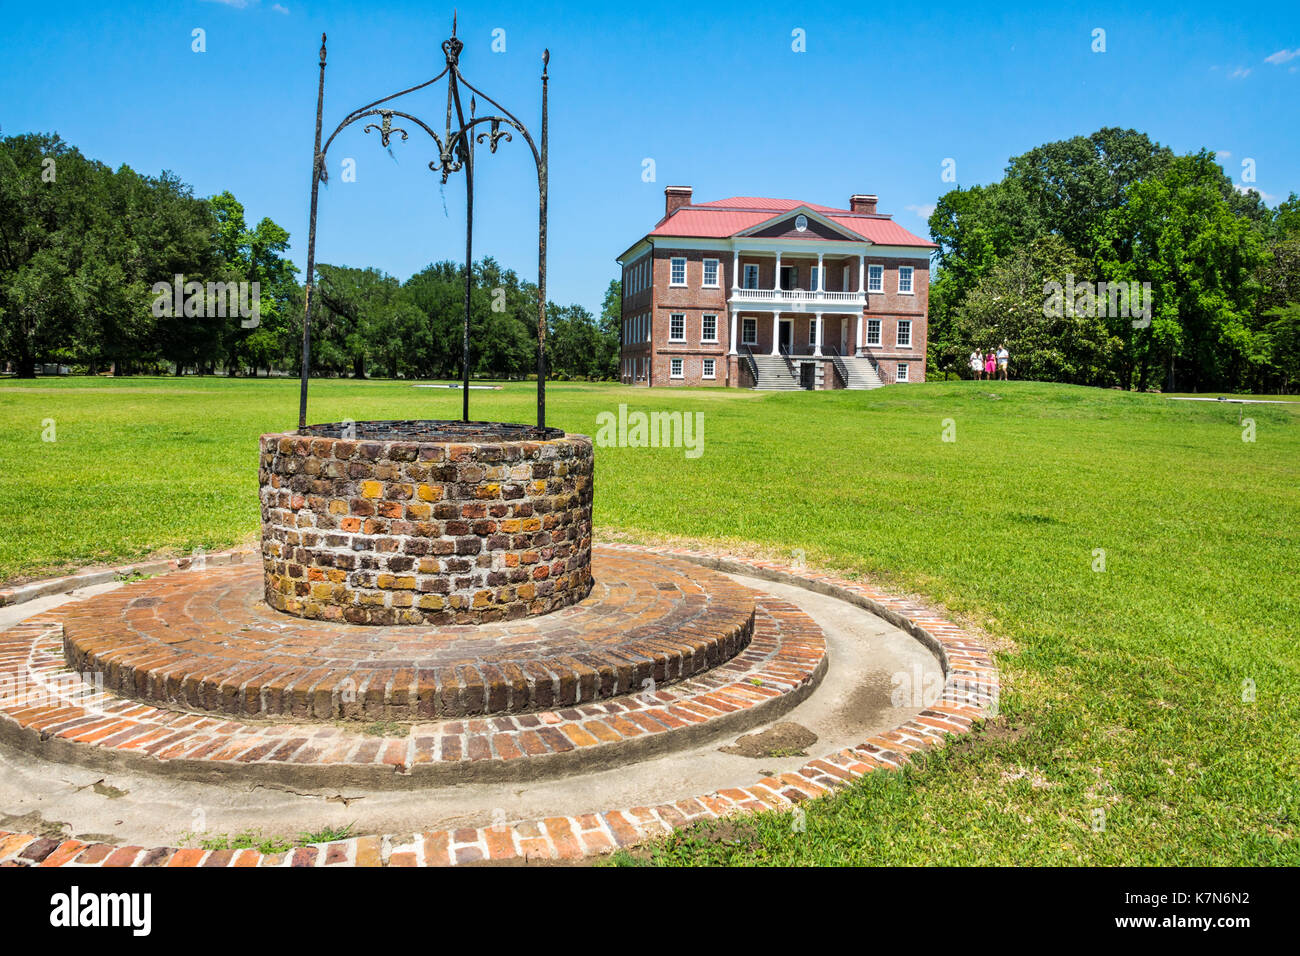 Charleston South Carolina, Drayton Hall, historische Plantage, Erhaltung, palladianische Architektur, Ziegelwasserbrunnen, SC170514235 Stockfoto